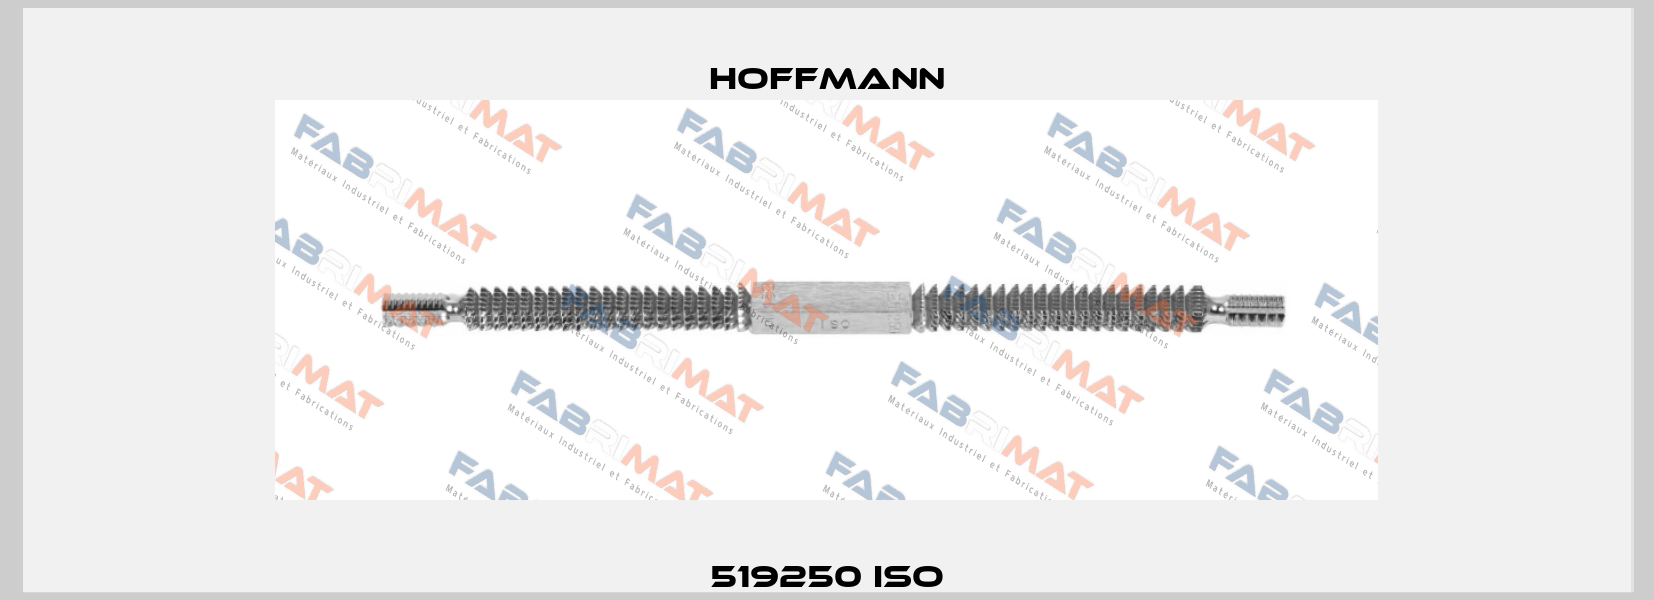 519250 ISO Hoffmann